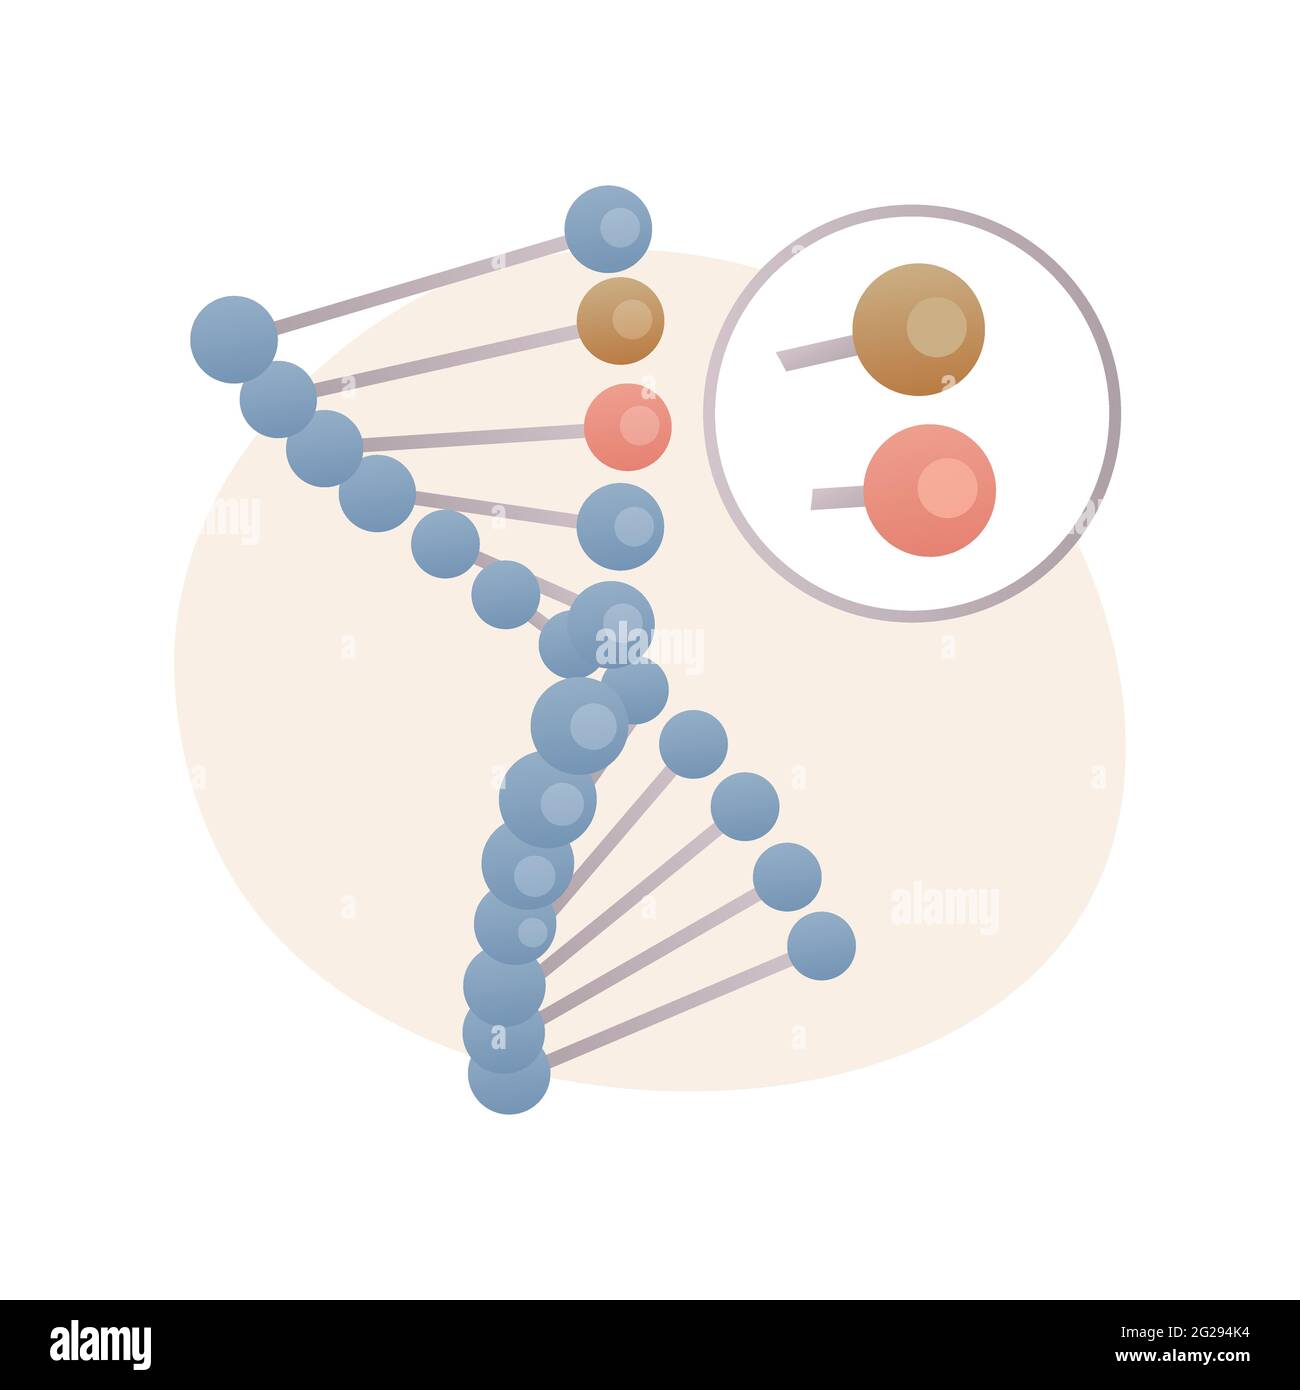 Organismo modificado genéticamente concepto abstracto ilustración vectorial. Ilustración del Vector